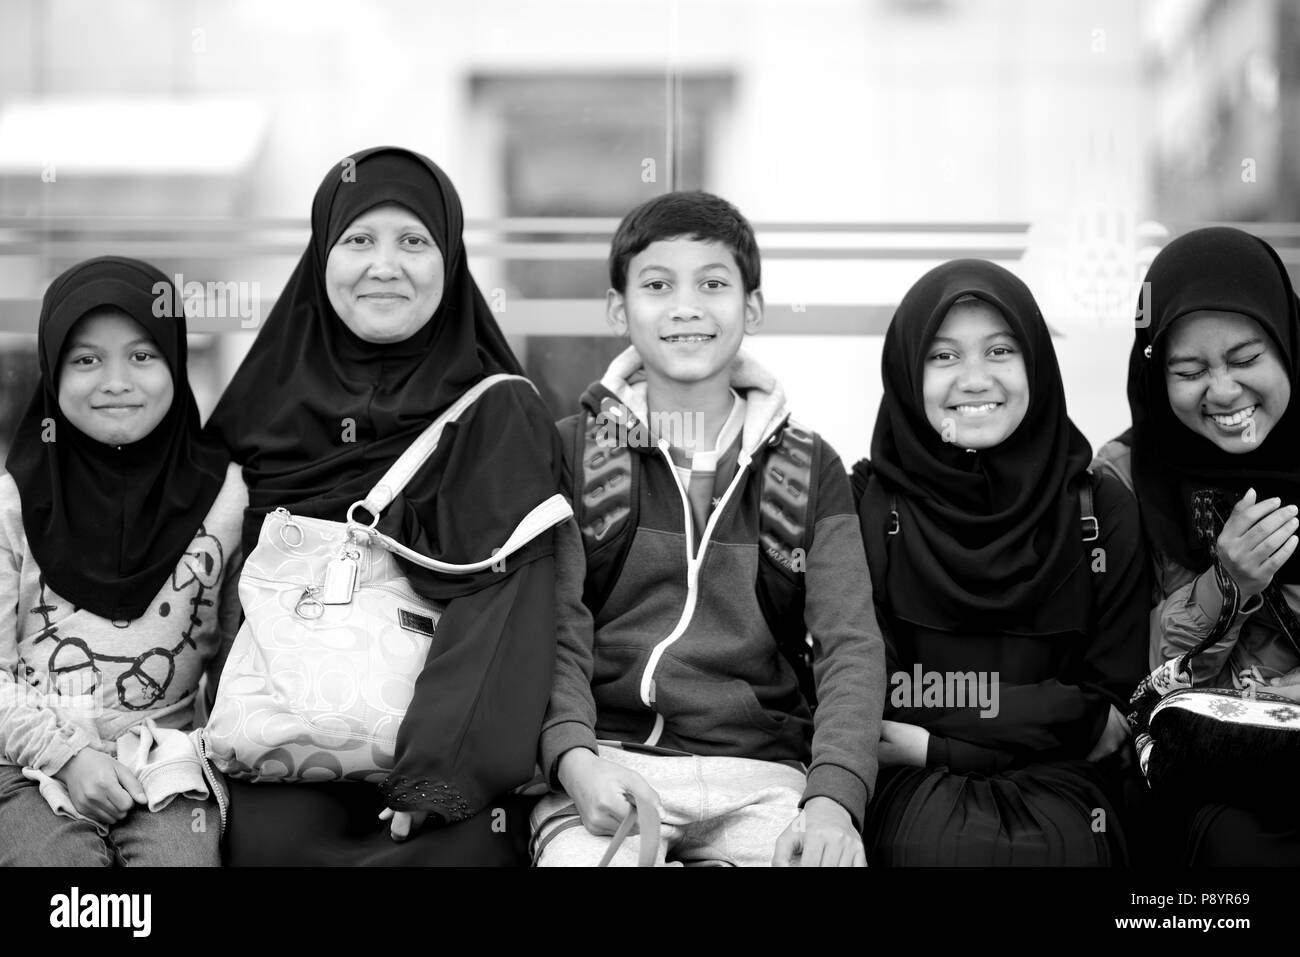 Heureux famille musulmane de sourire et s'amuser en tenue islamique, code vestimentaire islamique Banque D'Images